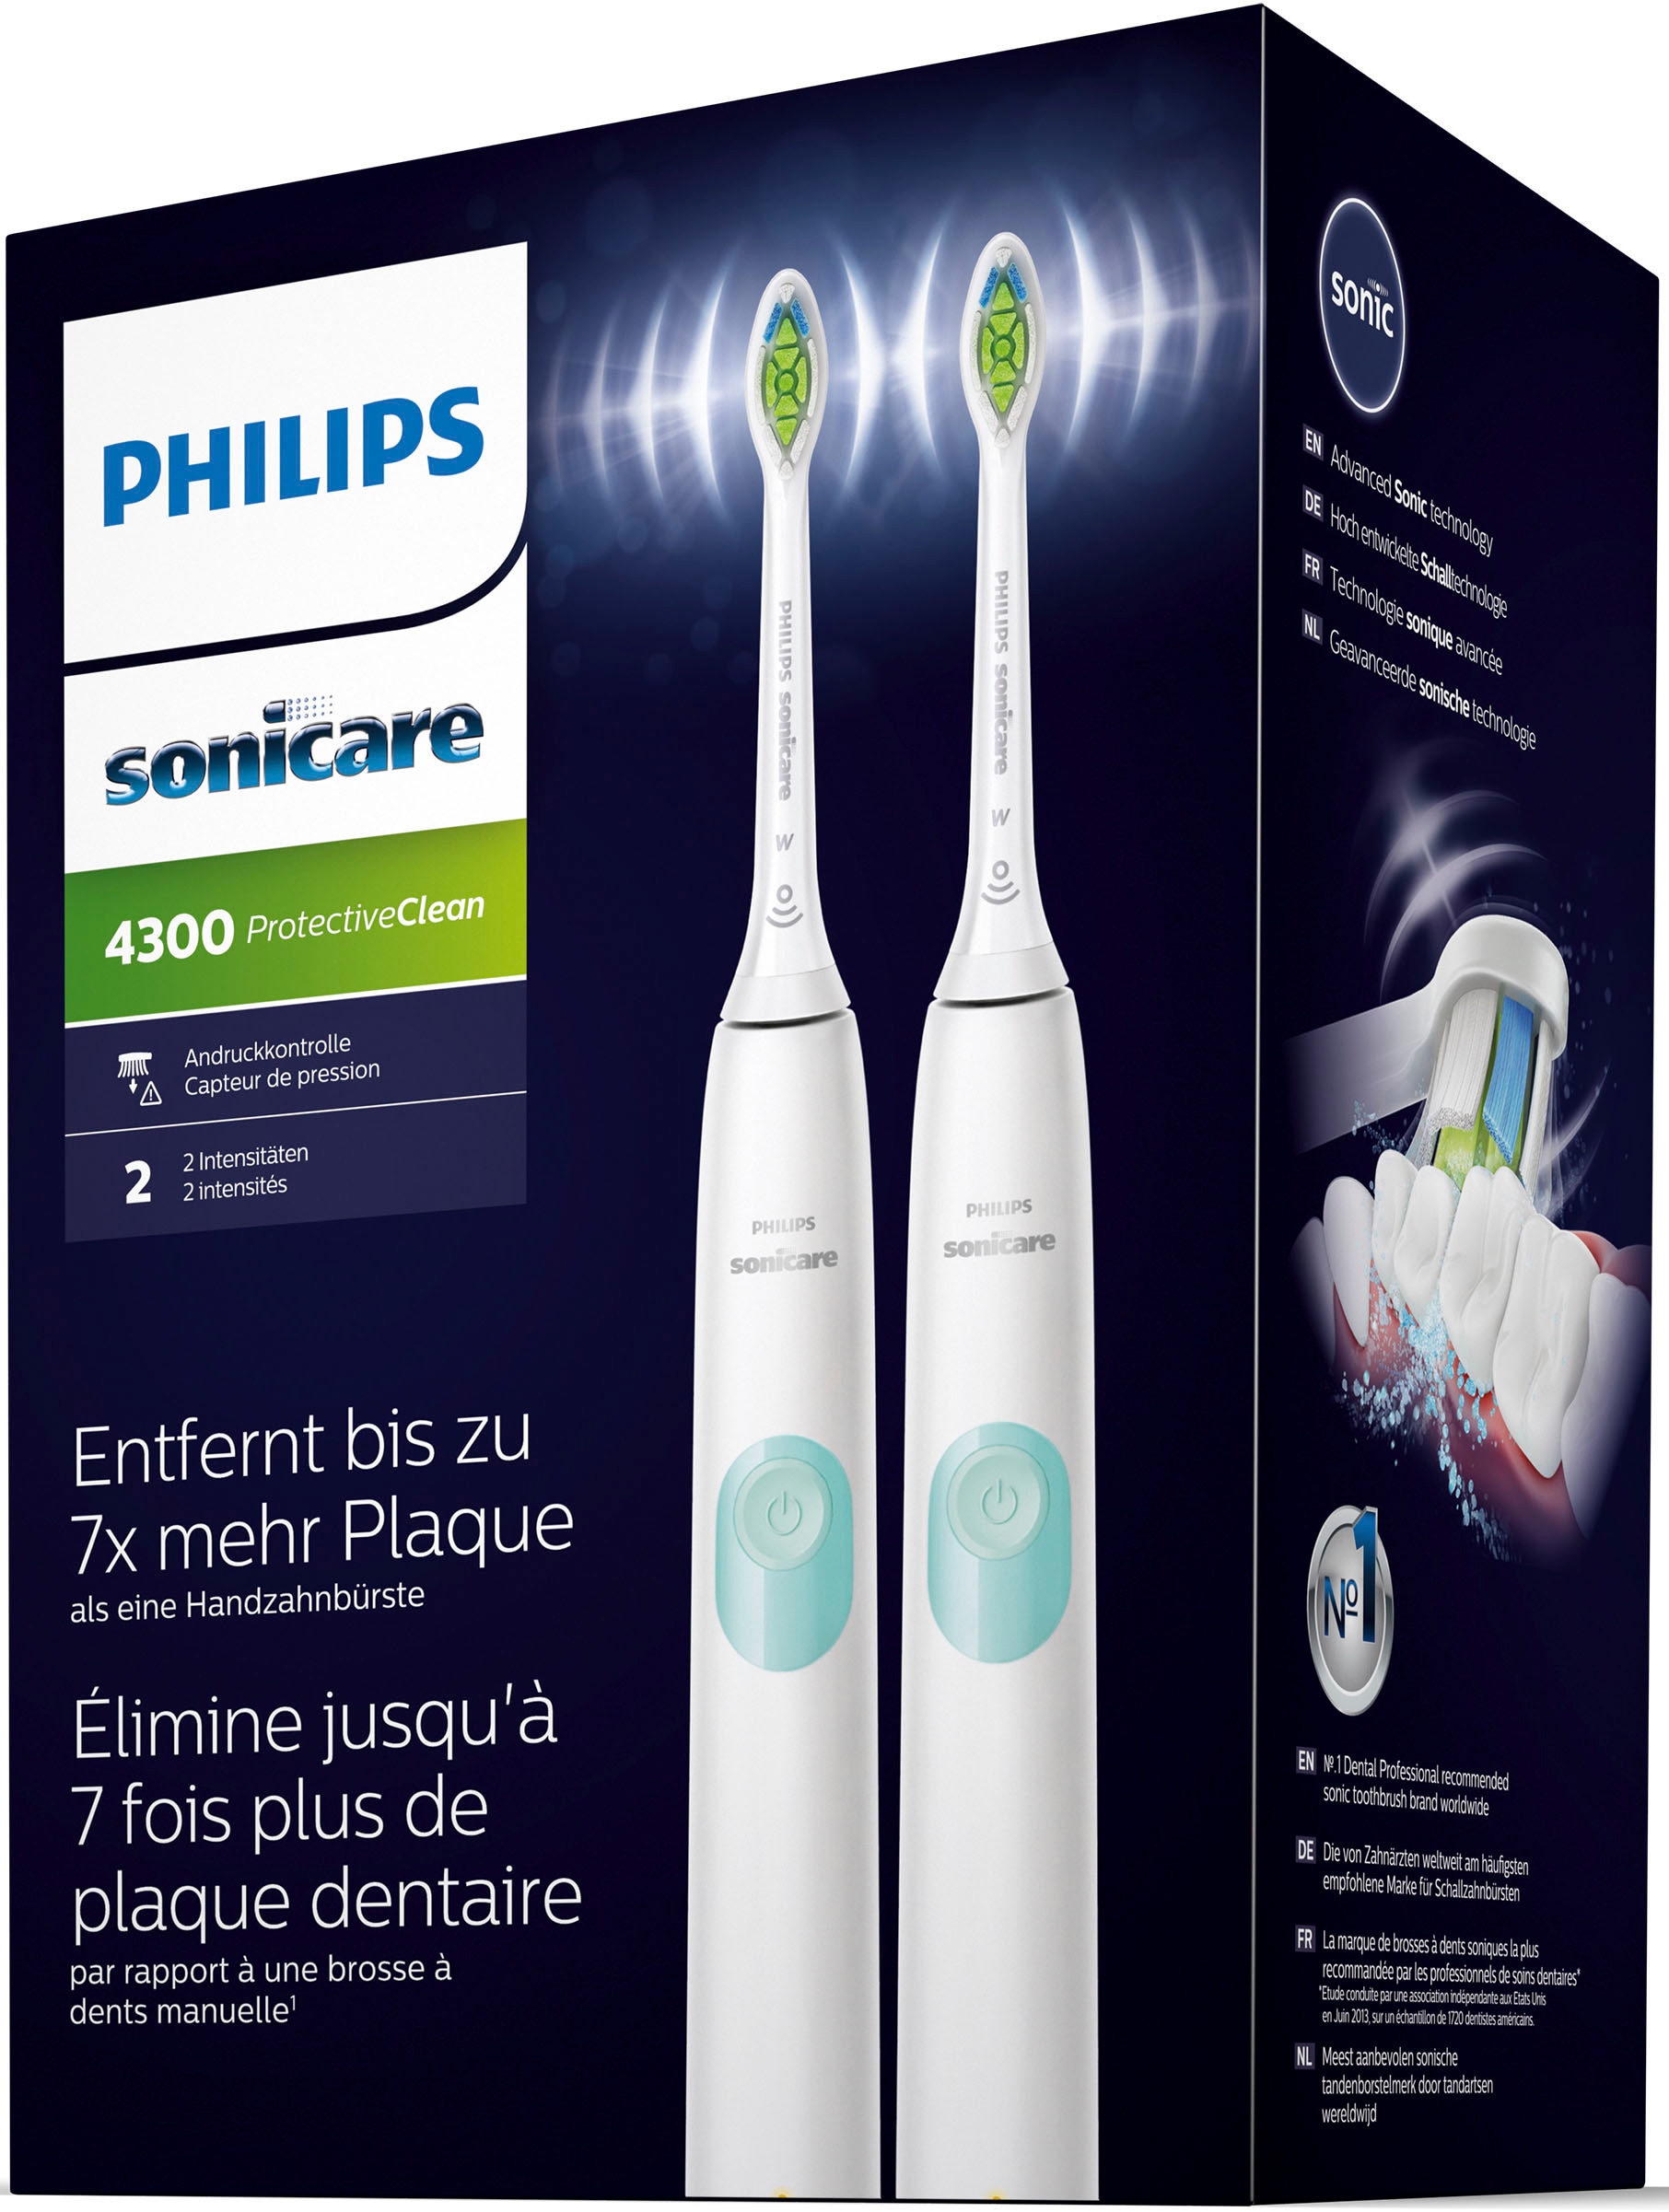 Philips Sonicare Elektrische Zahnbürste Garantie ProtectiveClean 2 St. 3 Jahren »HX6807/35«, Aufsteckbürsten, 4300, XXL Doppelpack, 1 mit Putzprogramm